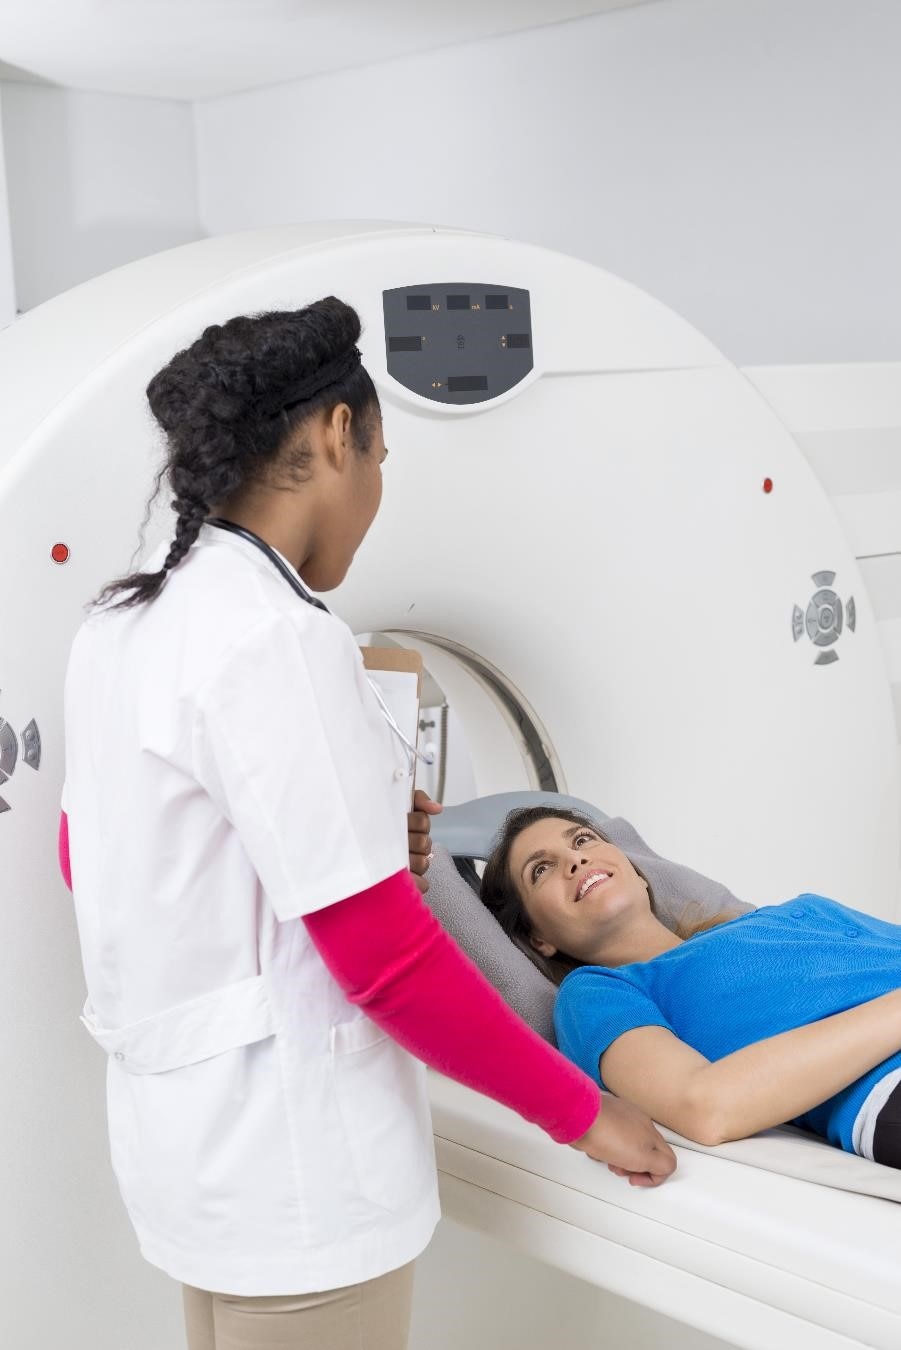 تقوم إحدى أخصائيات الرعاية الصحية بإعداد مريضة لإجراء فحص التصوير بالرنين المغناطيسي.